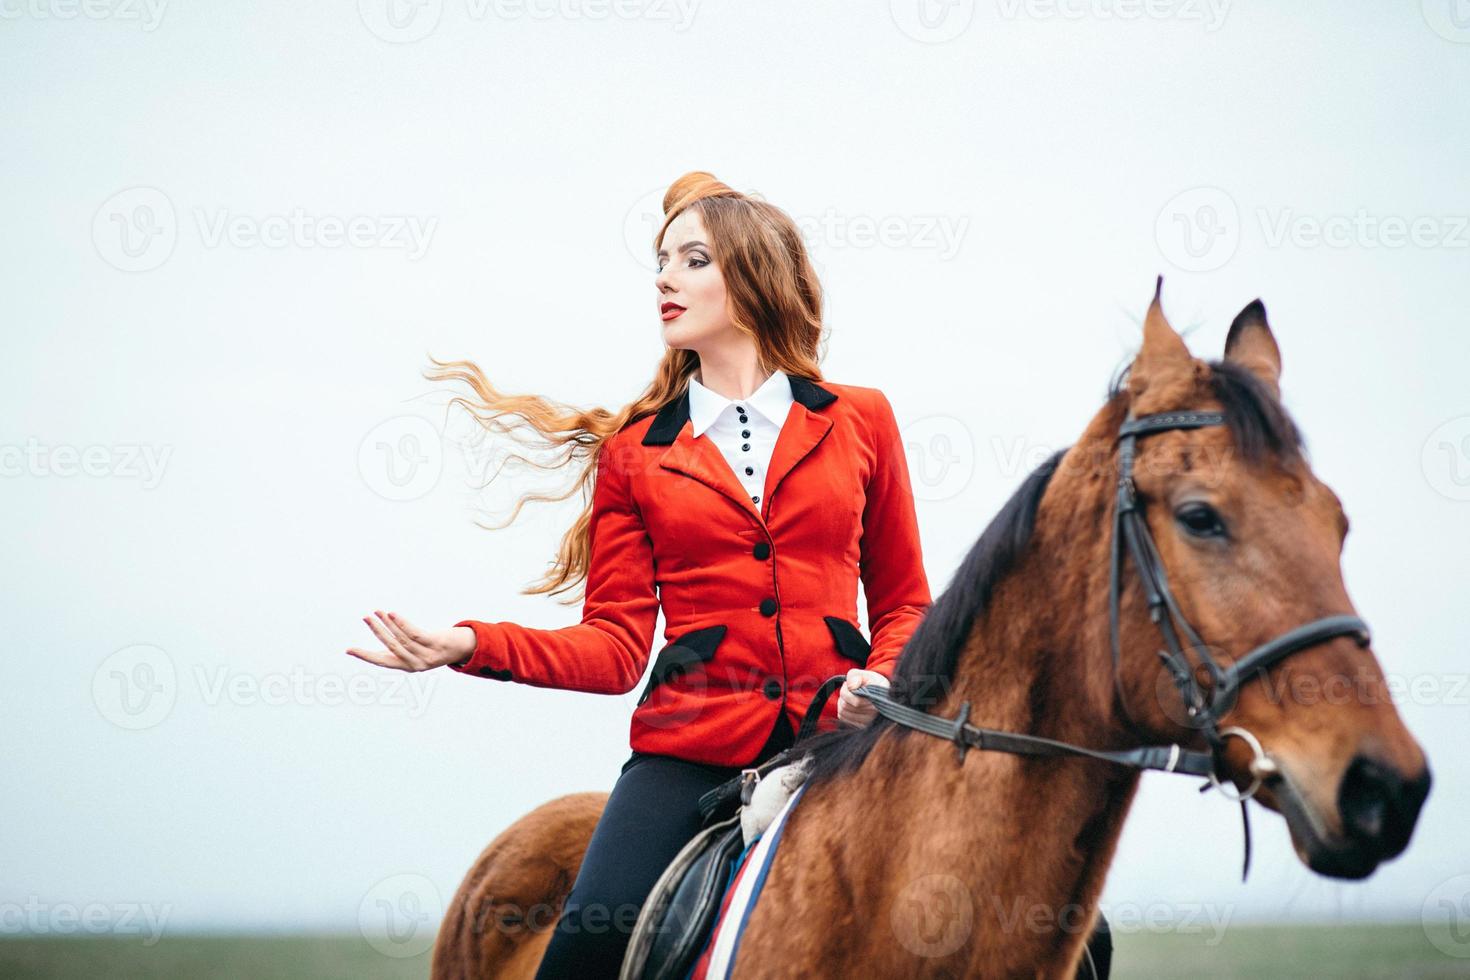 ragazza fantino dai capelli rossi in un cardigan rosso e stivali alti neri con un cavallo foto